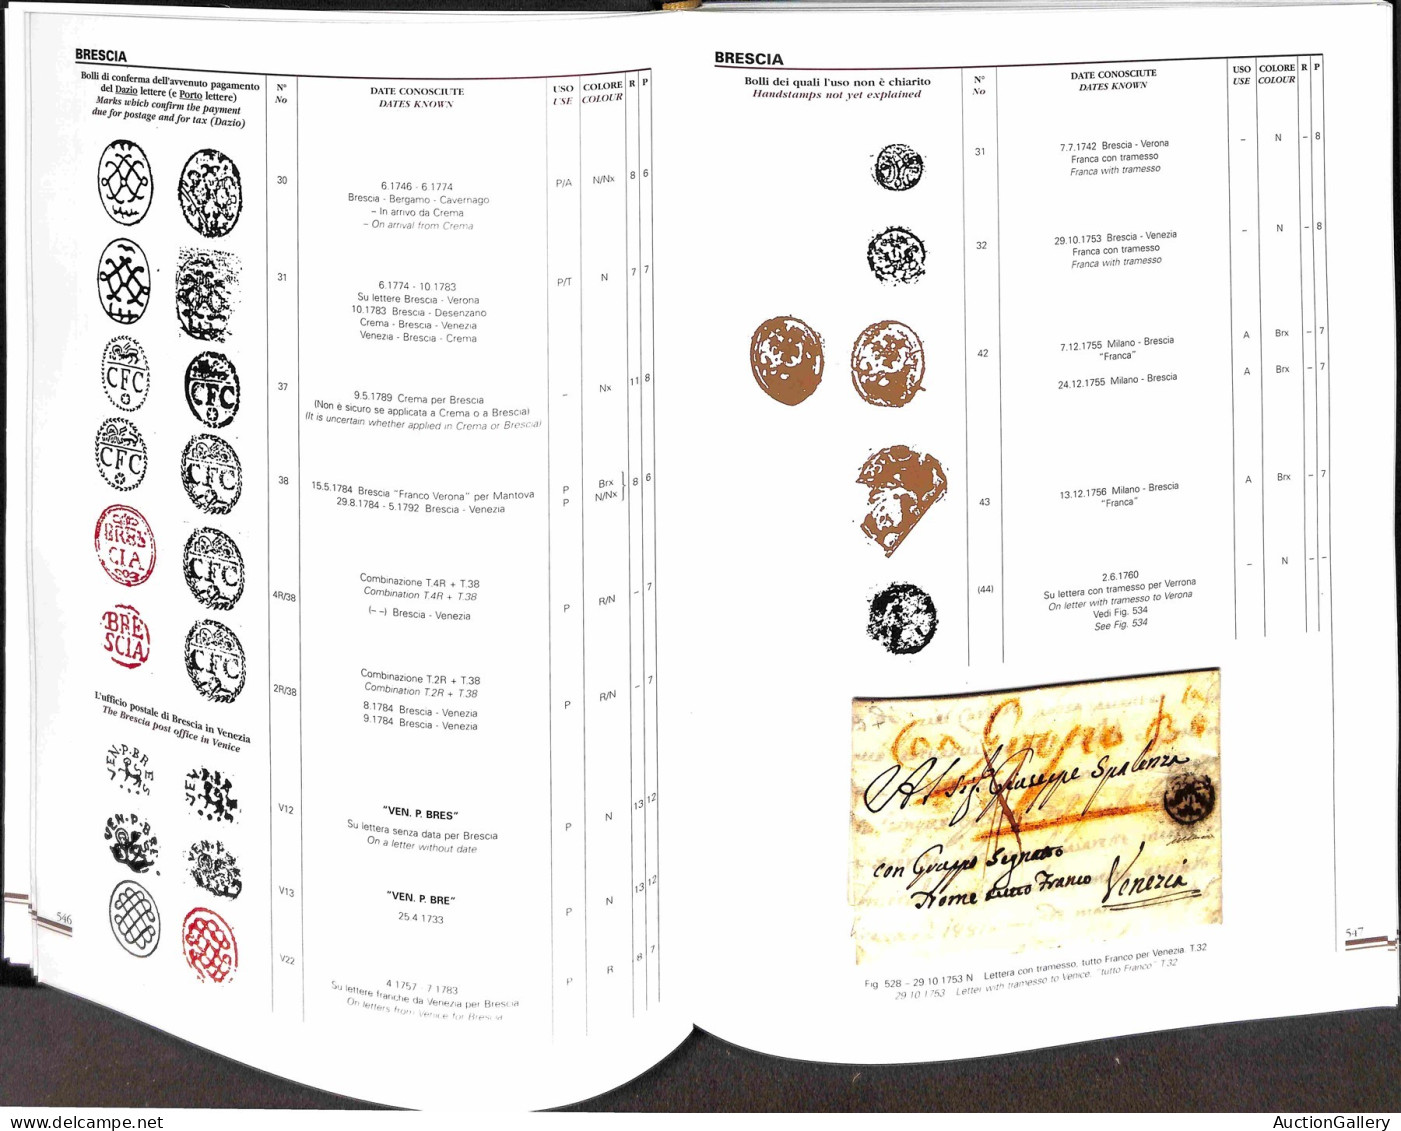 Biblioteca Filatelica - Italia - Repubblica di Venezia catalogo documentato (con storia postale) - raccolta in 2 volumi 